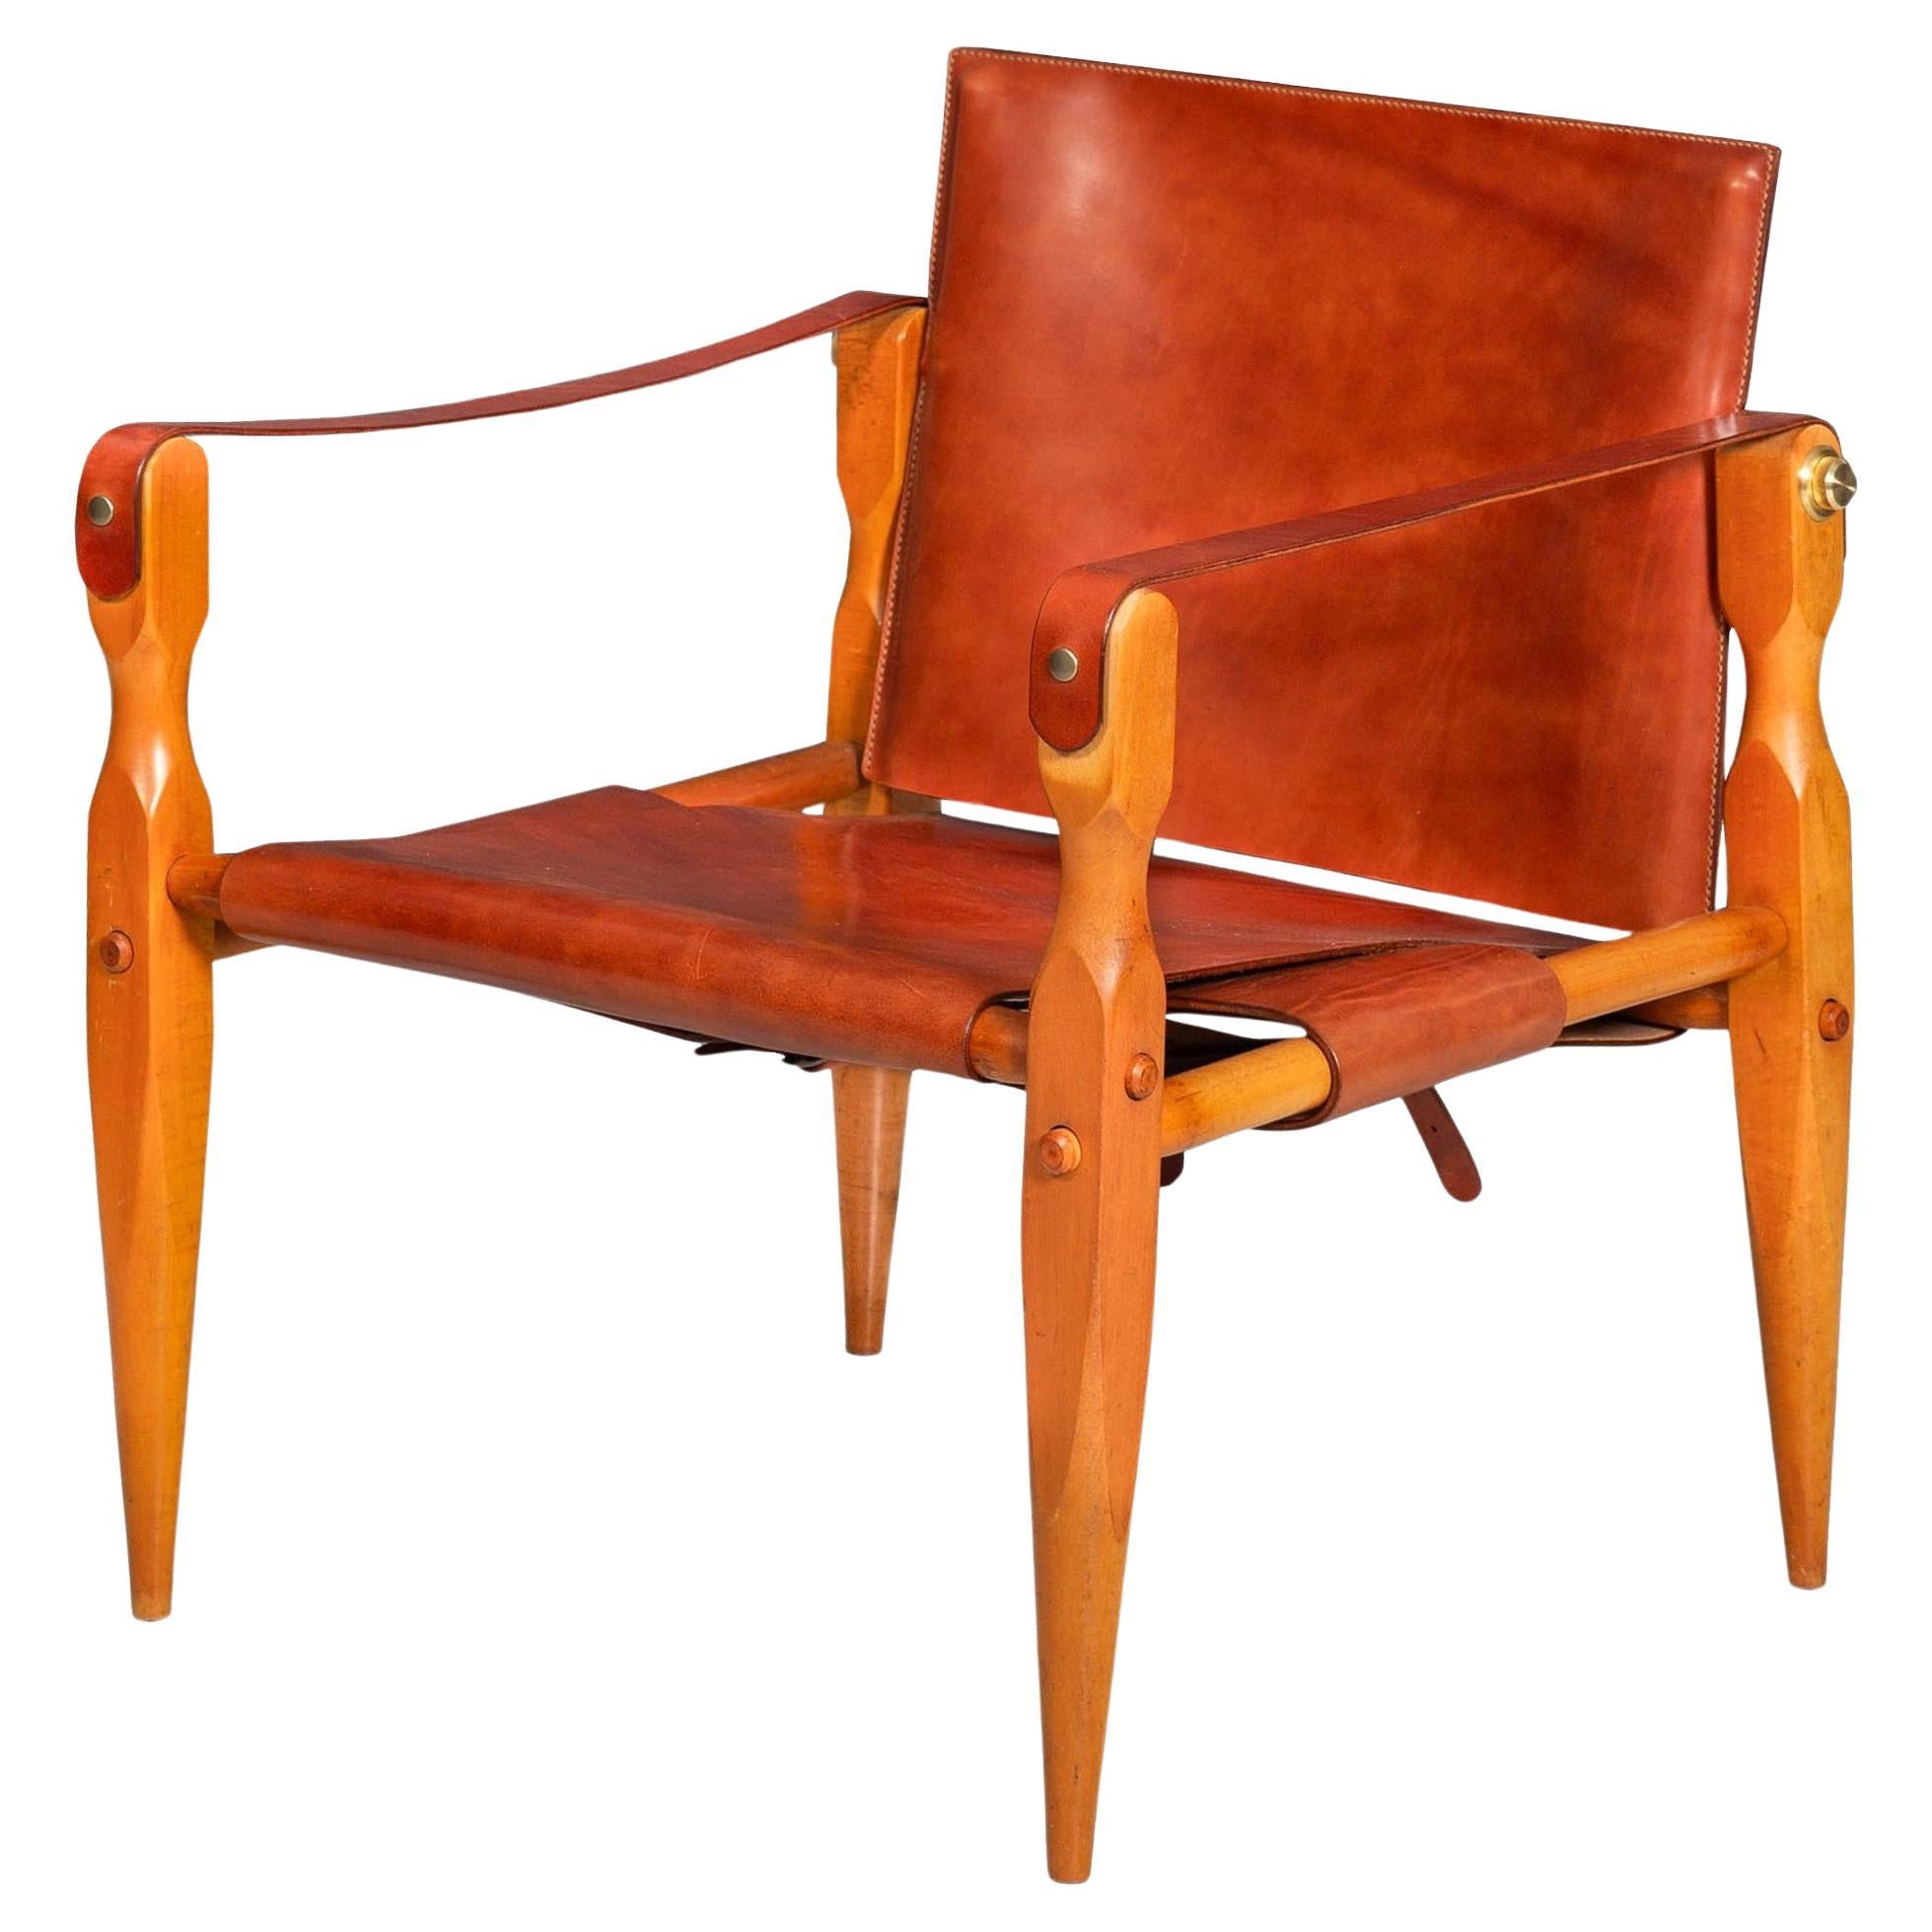 Wunderschöner CIRCA 1970s Mid-Century Modern Safari Chair in New Leather